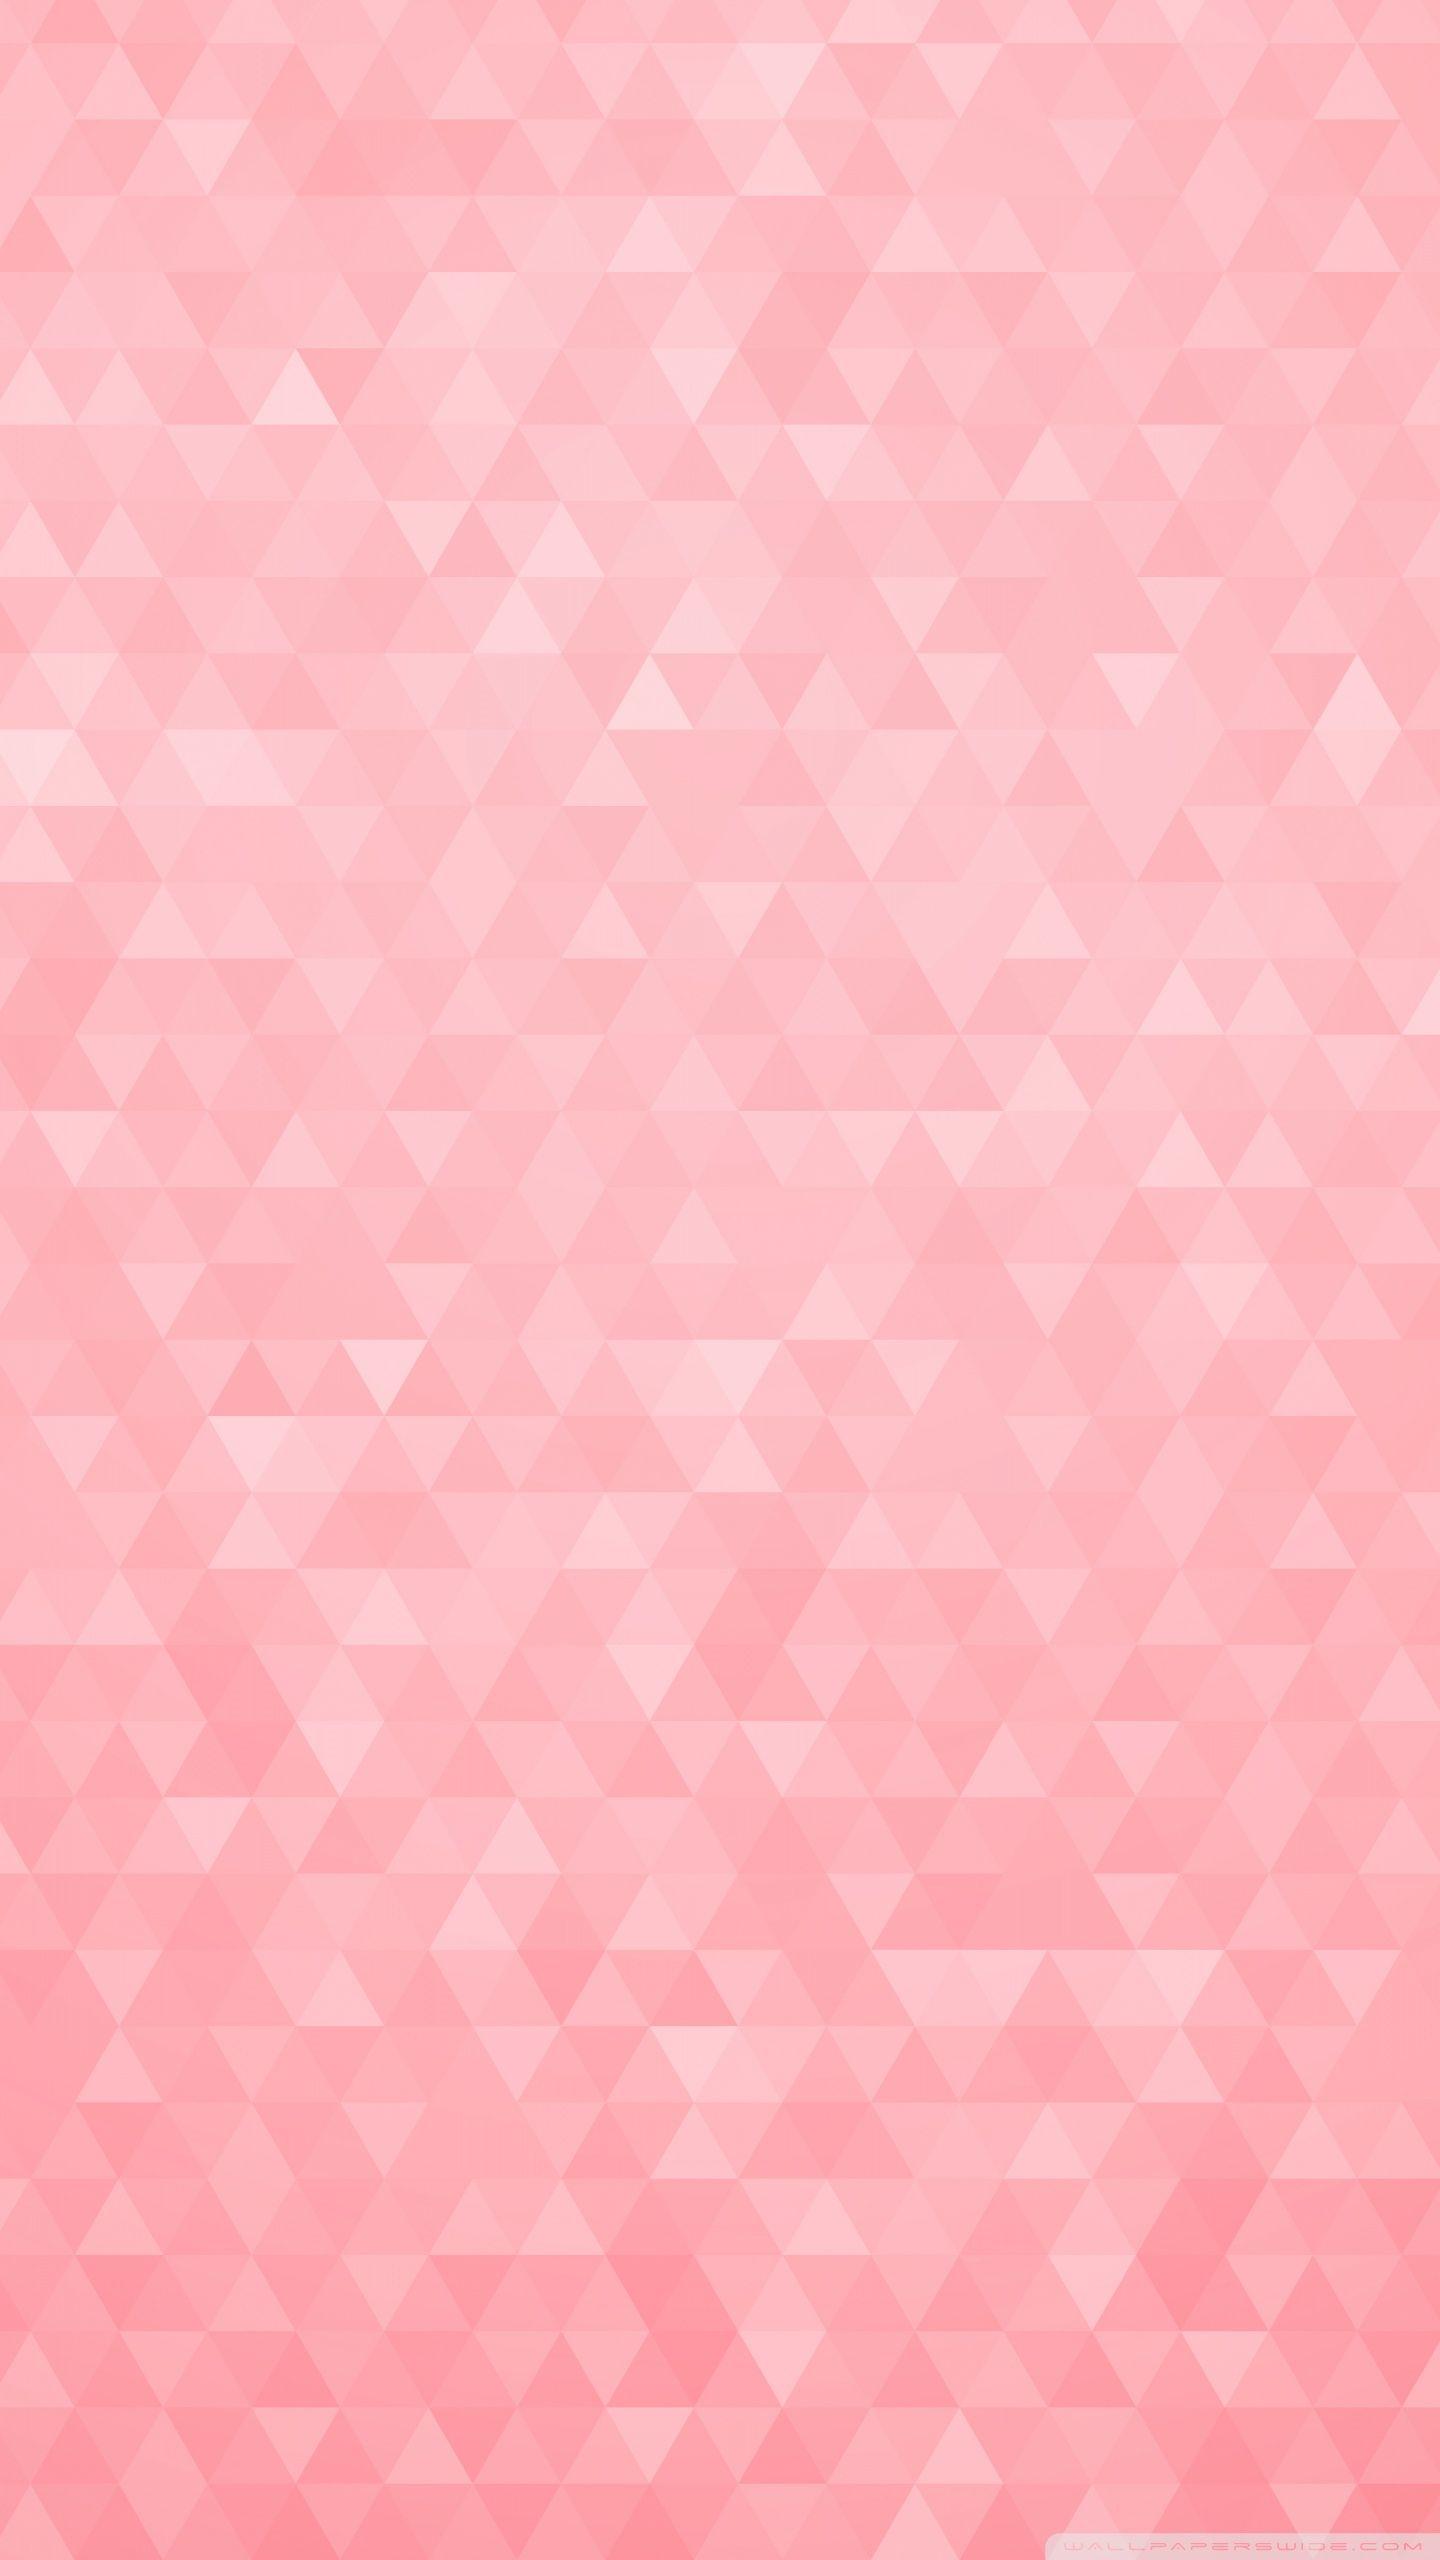 Hình nền mỹ thuật pastel hồng: Hình nền mỹ thuật pastel hồng mang đến một bầu không khí mộc mạc, ấm áp nhưng cũng vô cùng tươi sáng. Bạn sẽ thích thú với những họa tiết đơn giản nhưng đầy nghệ thuật trên nền background pastel hồng tuyệt đẹp.